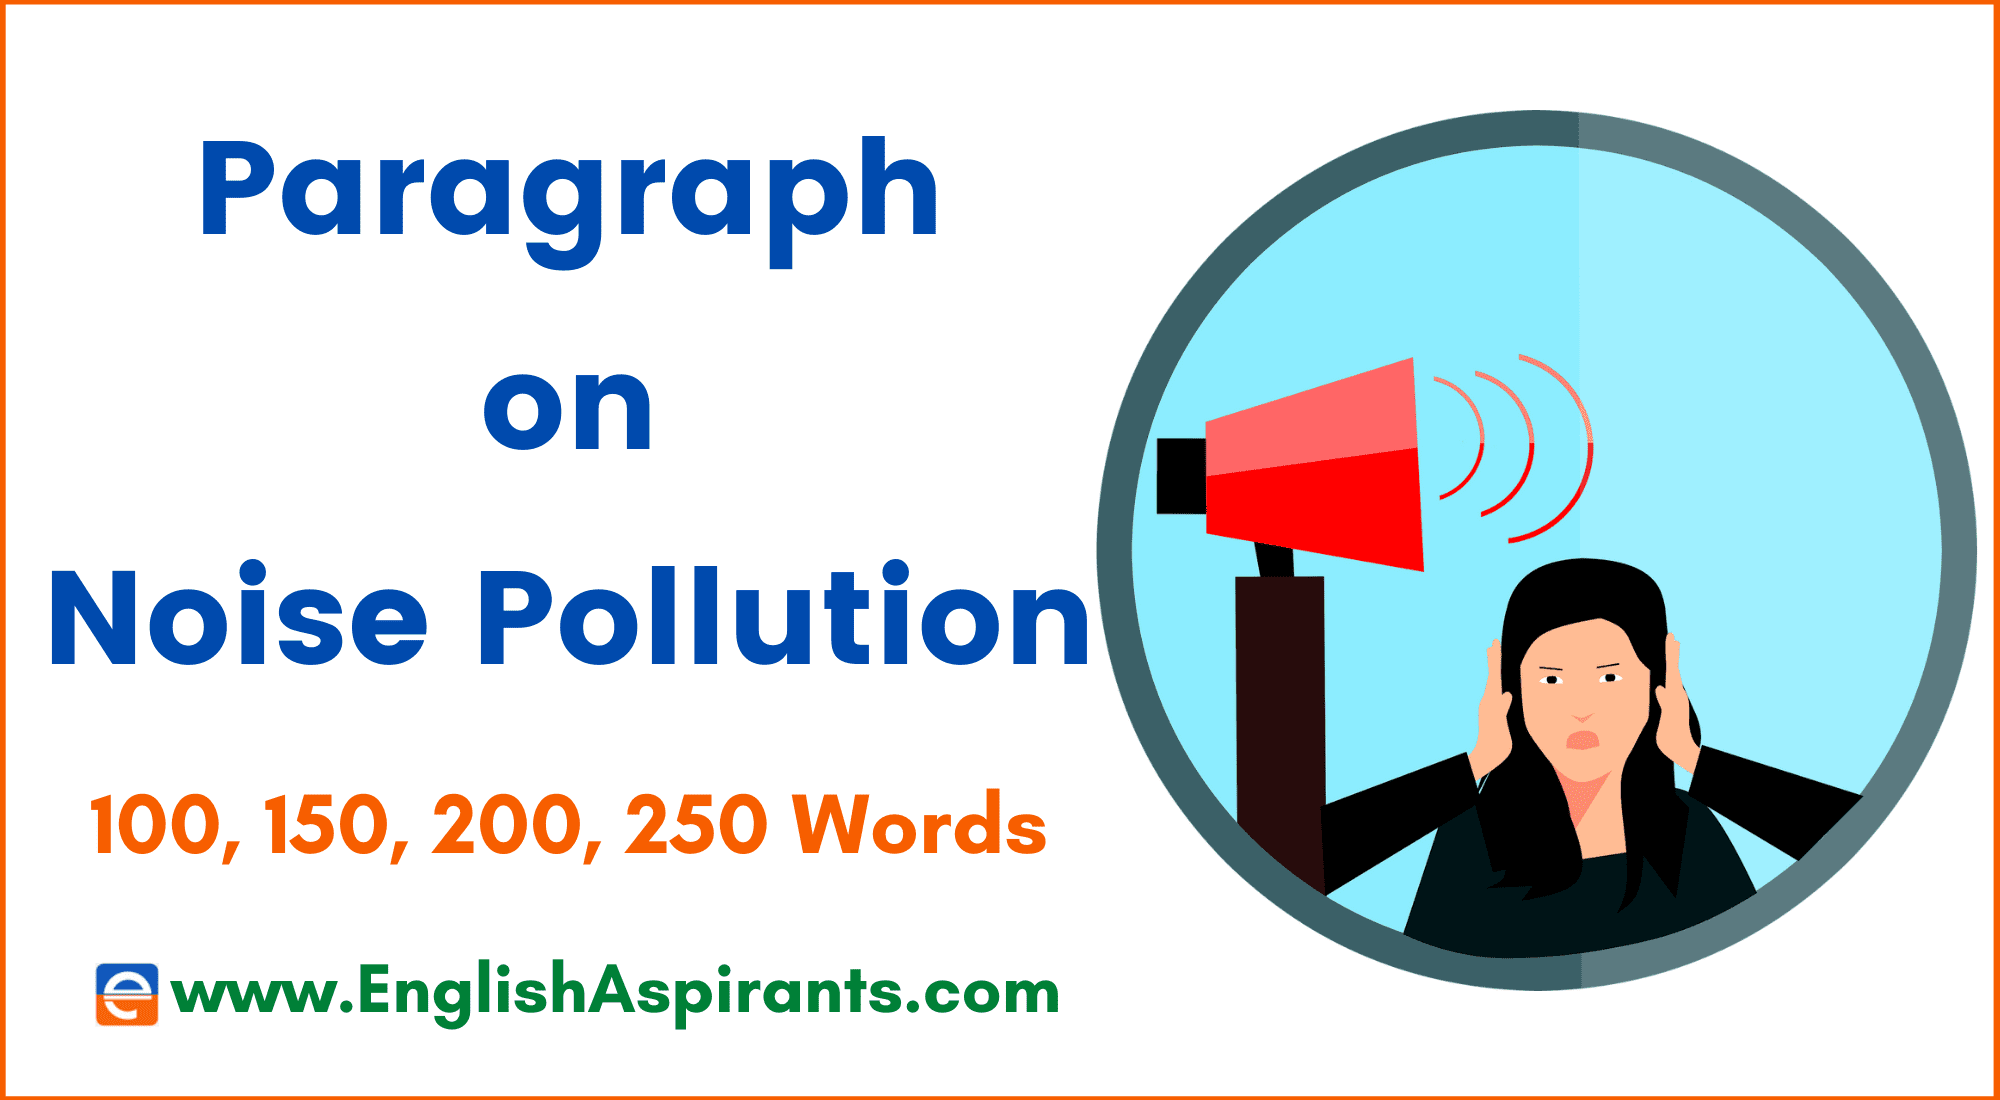 sound pollution essay in 100 words